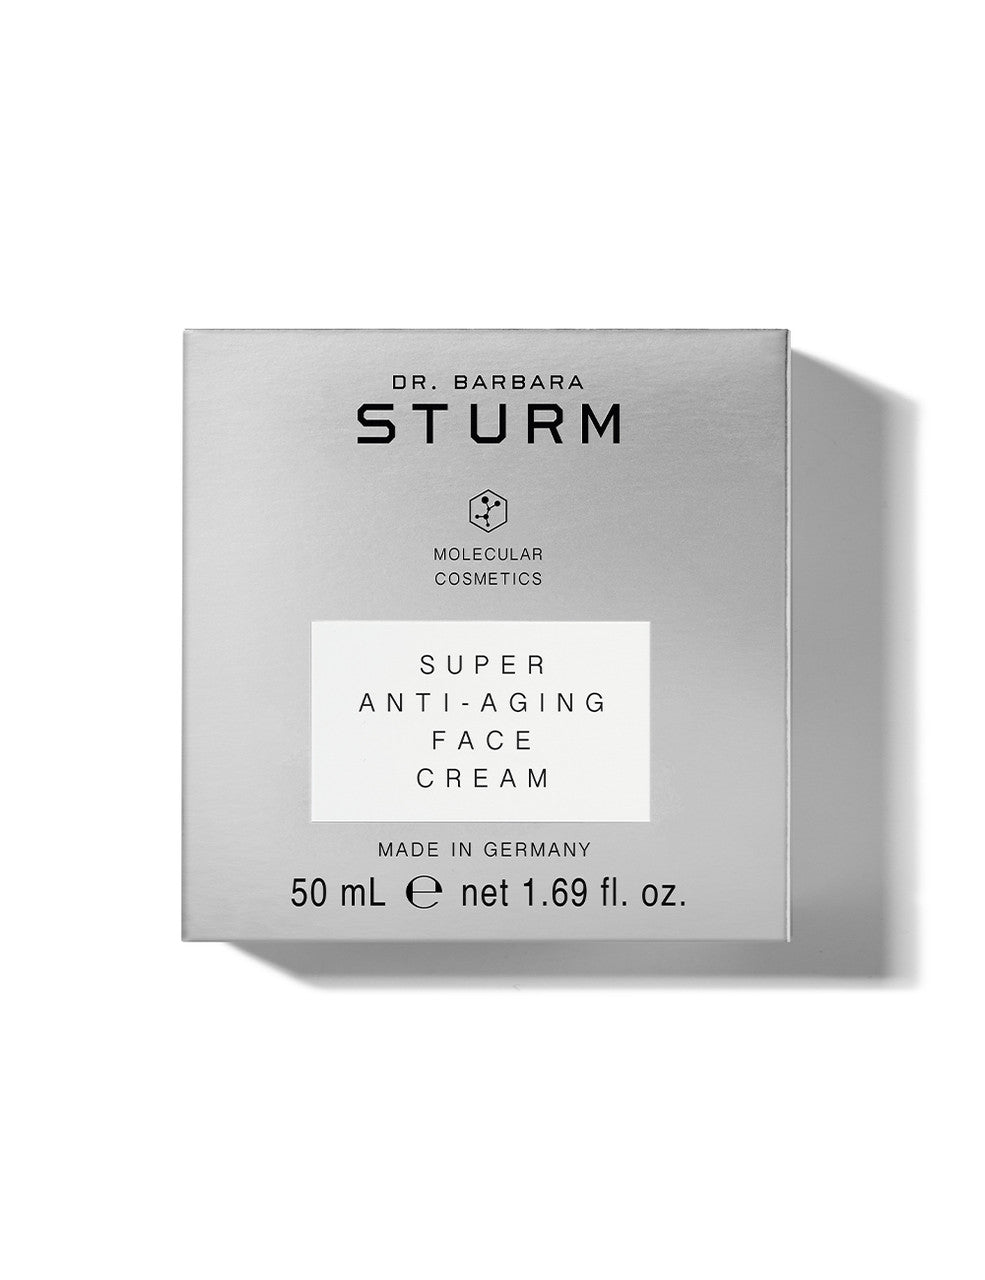 Dr. Barbara Sturm Super Anti-Aging Face Cream 50Ml - AllurebeautypkDr. Barbara Sturm Super Anti-Aging Face Cream 50Ml